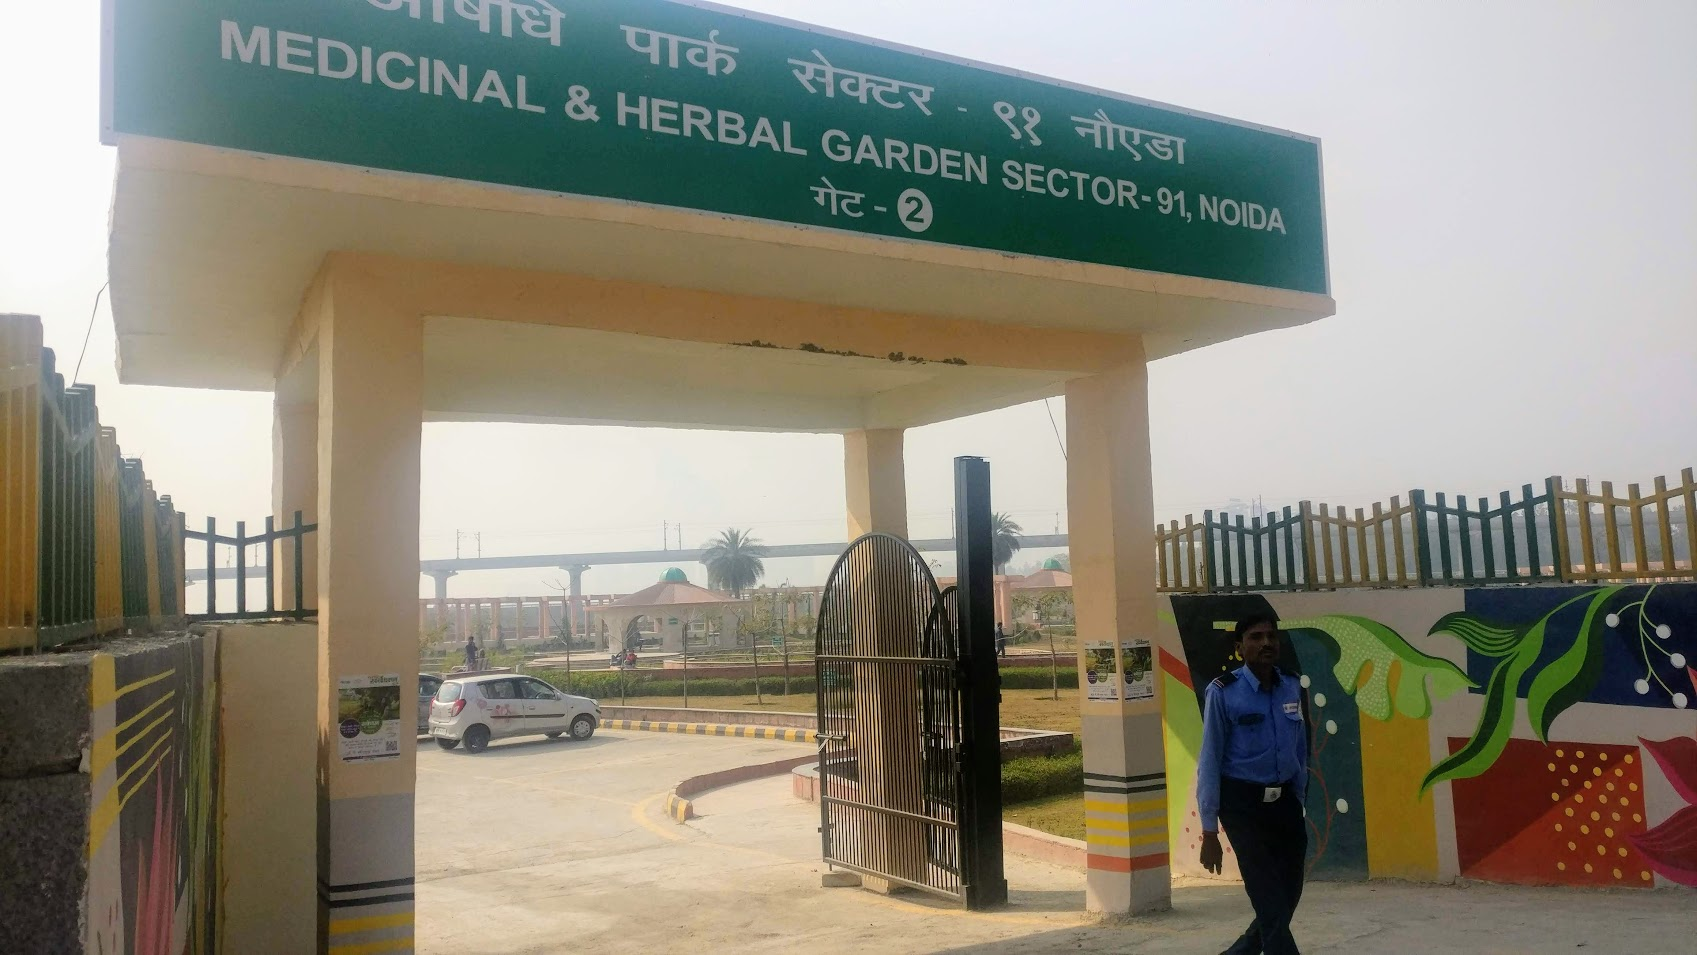 Main entrance of the medicinal and herbal garden of sector 91, Noida